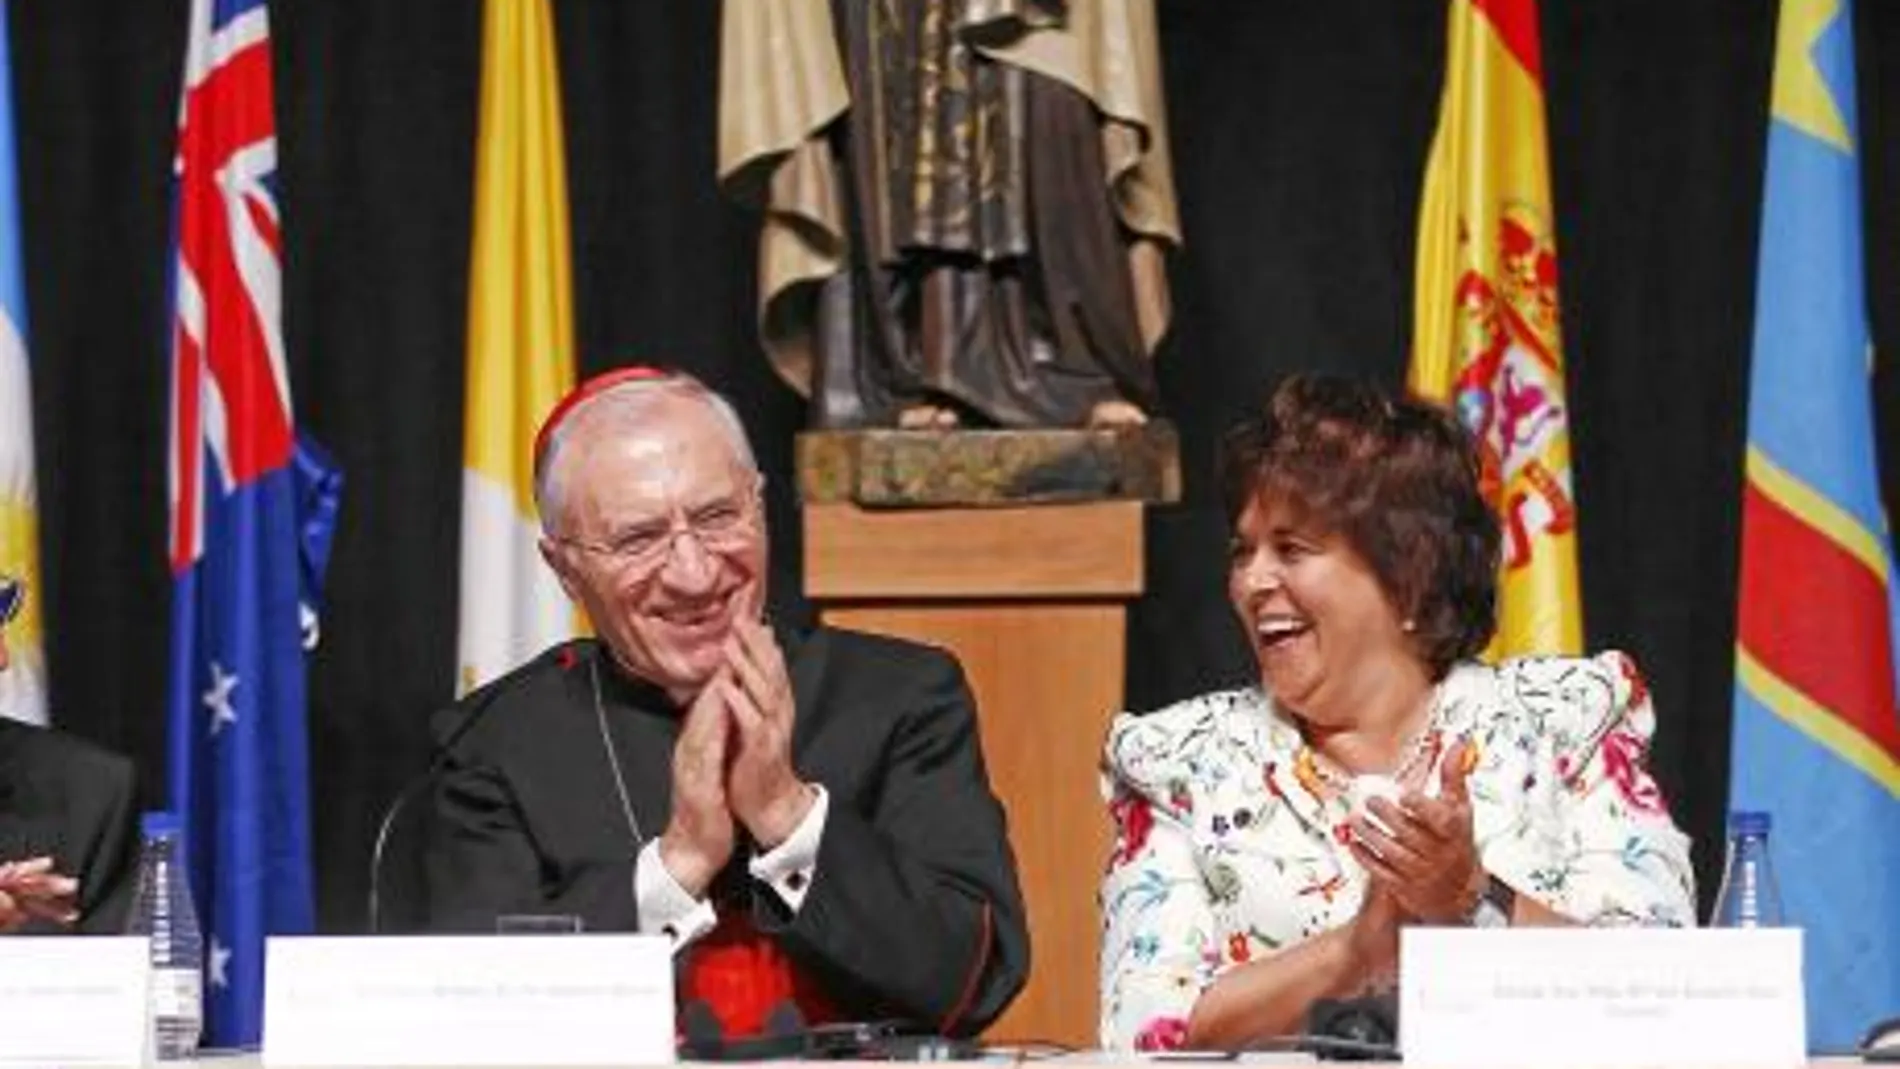 El presidente de la Conferencia Episcopal, Antonio María Rouco Varela, clausuró ayer el congreso acompañado de la rectora de la Universidad de Ávila, Rosario Sáez Yuguero